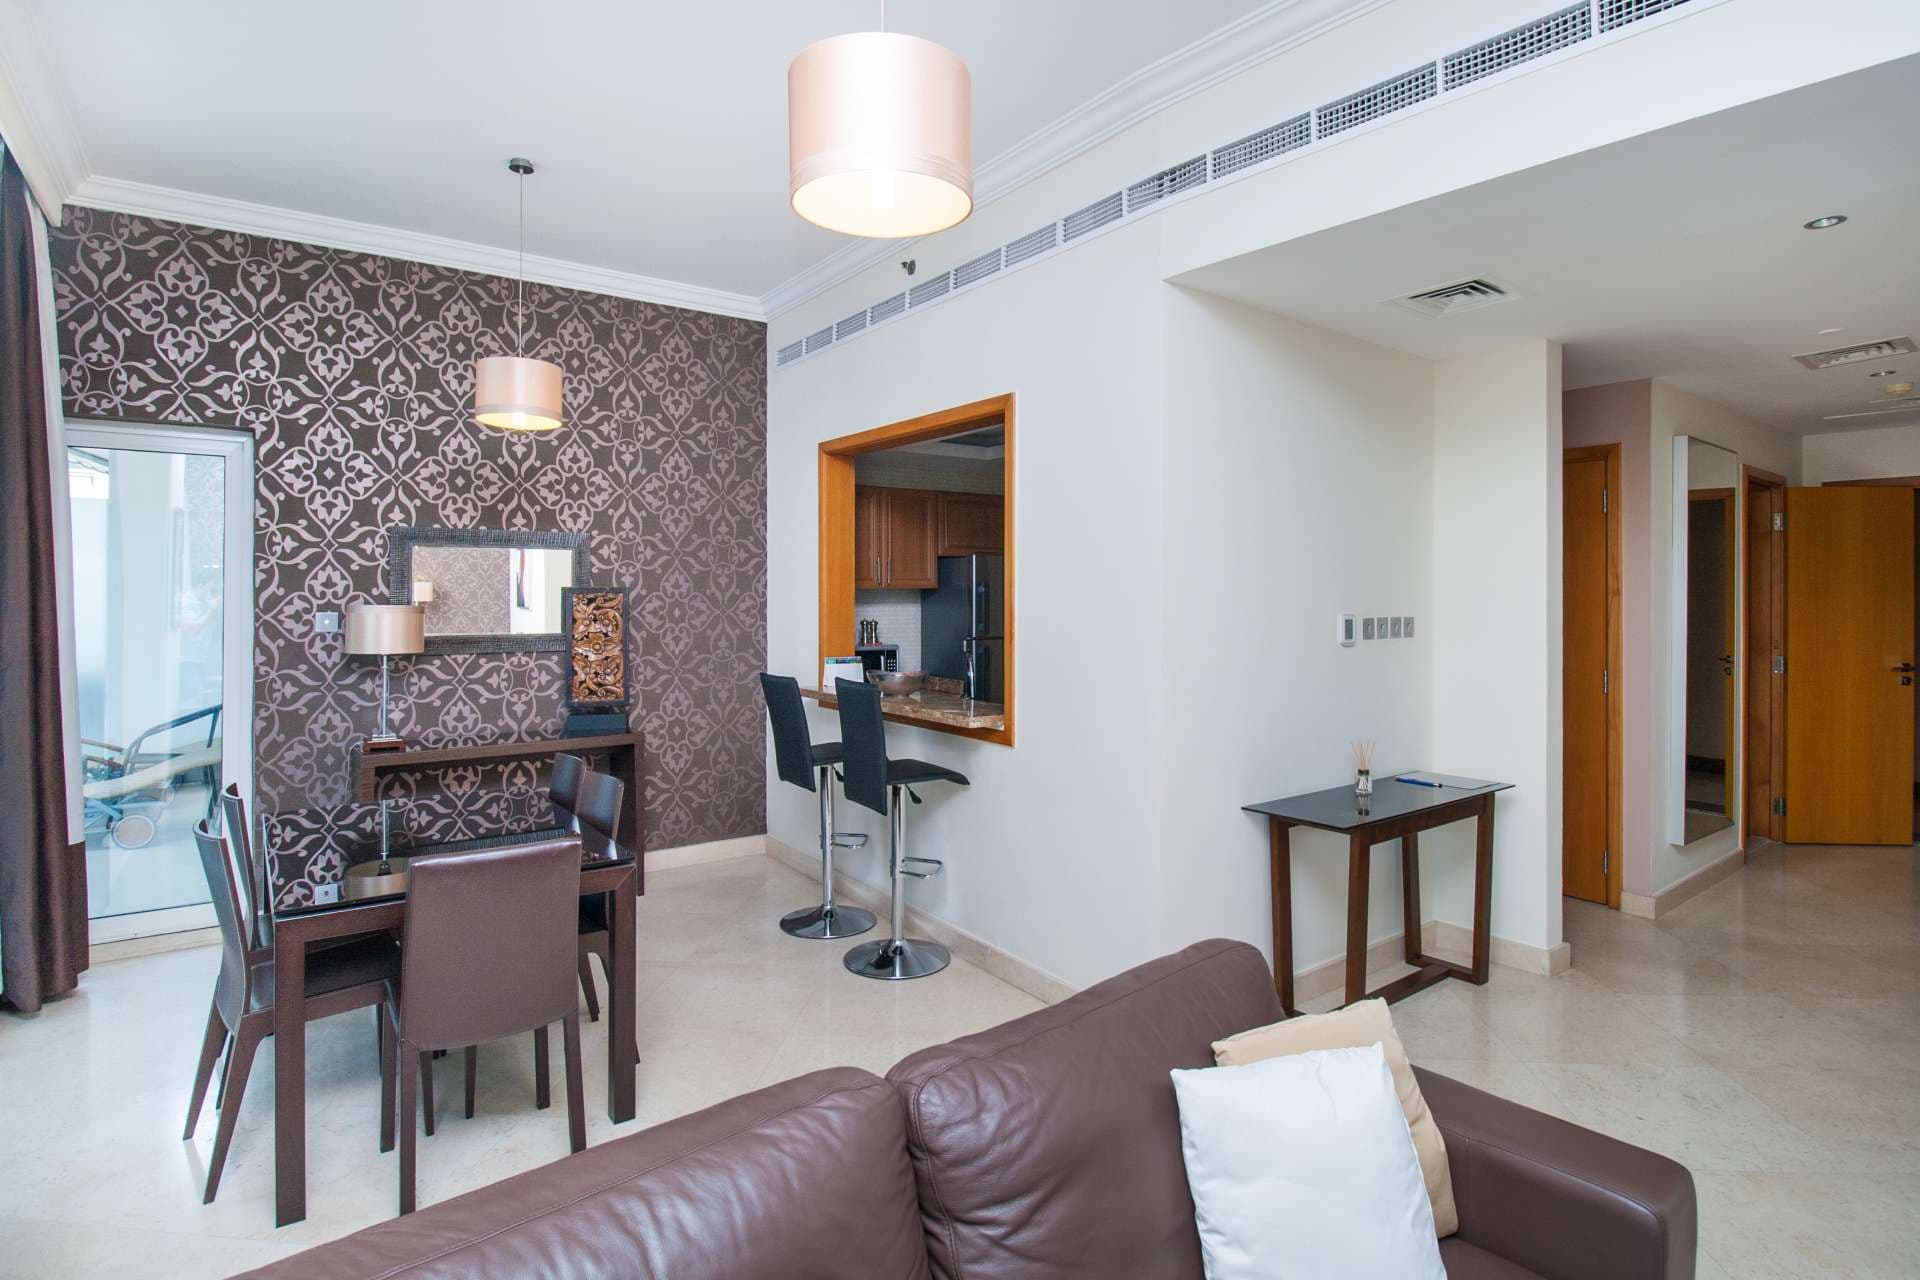 1 Bedroom Apartment For Rent Dorra Bay Lp04864 11cf43d89c87d800.jpg